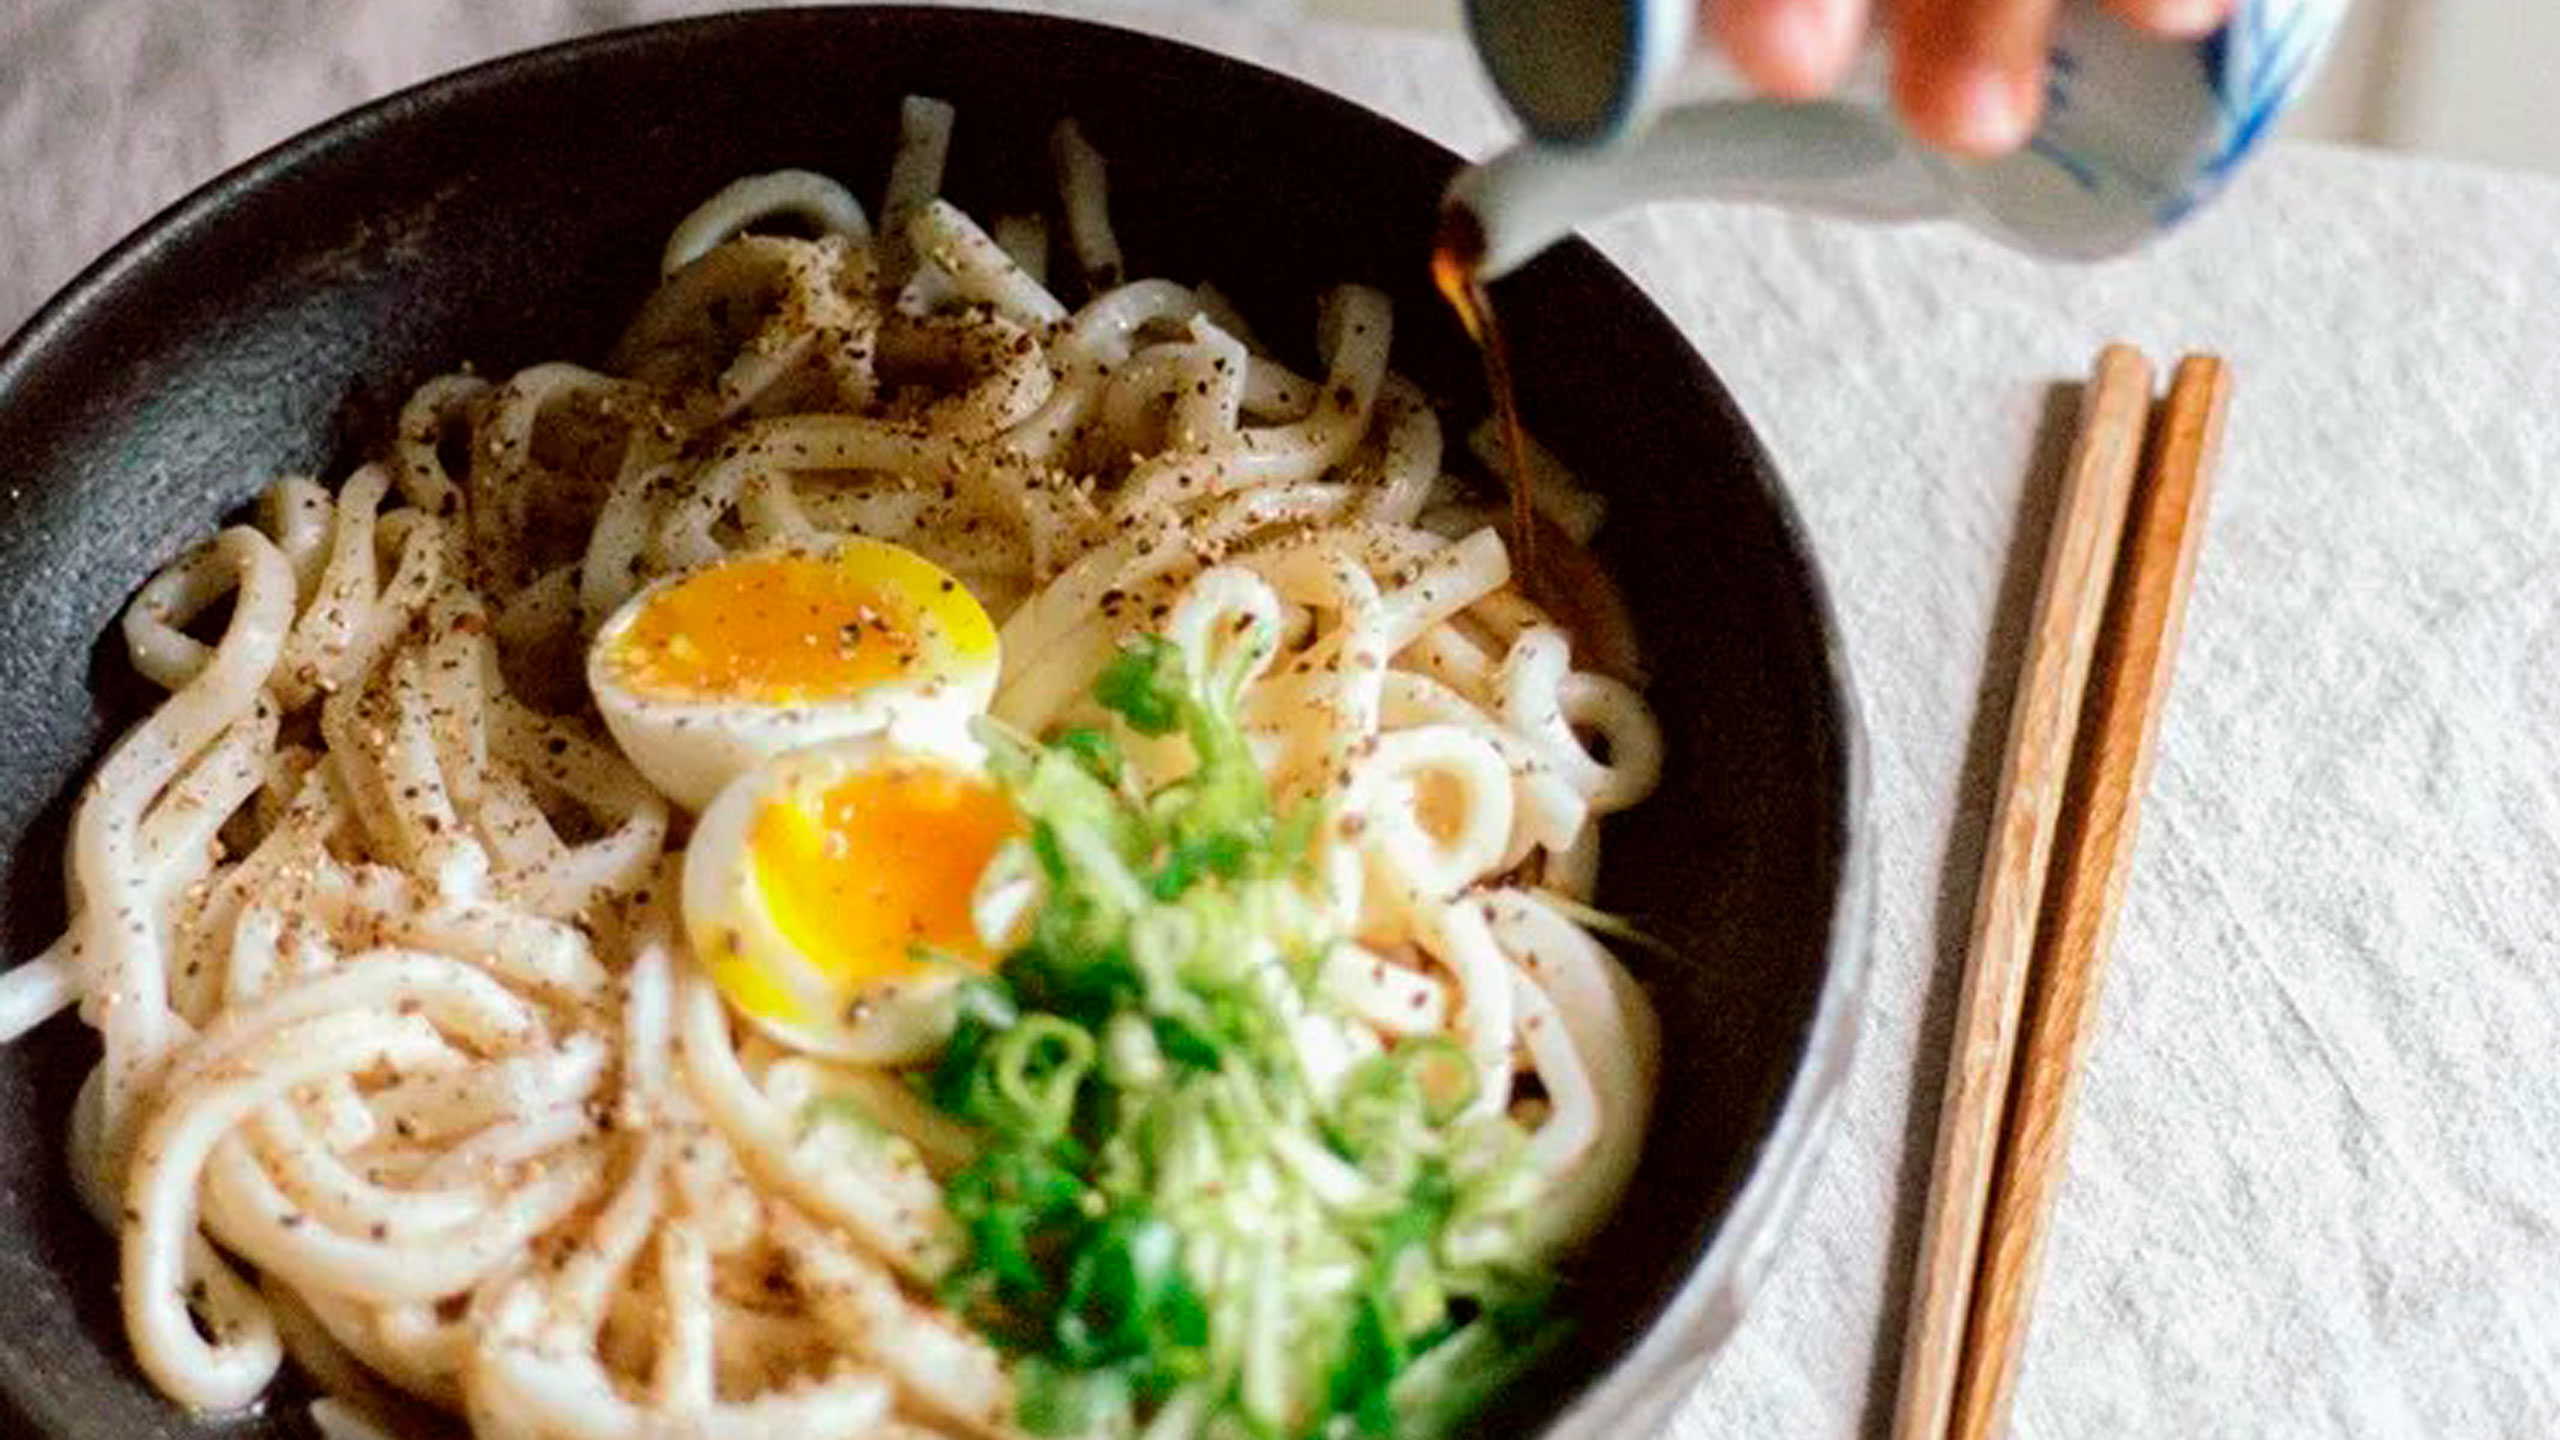 Los secretos de los chefs para elaborar delicioso ramen, soba y udon